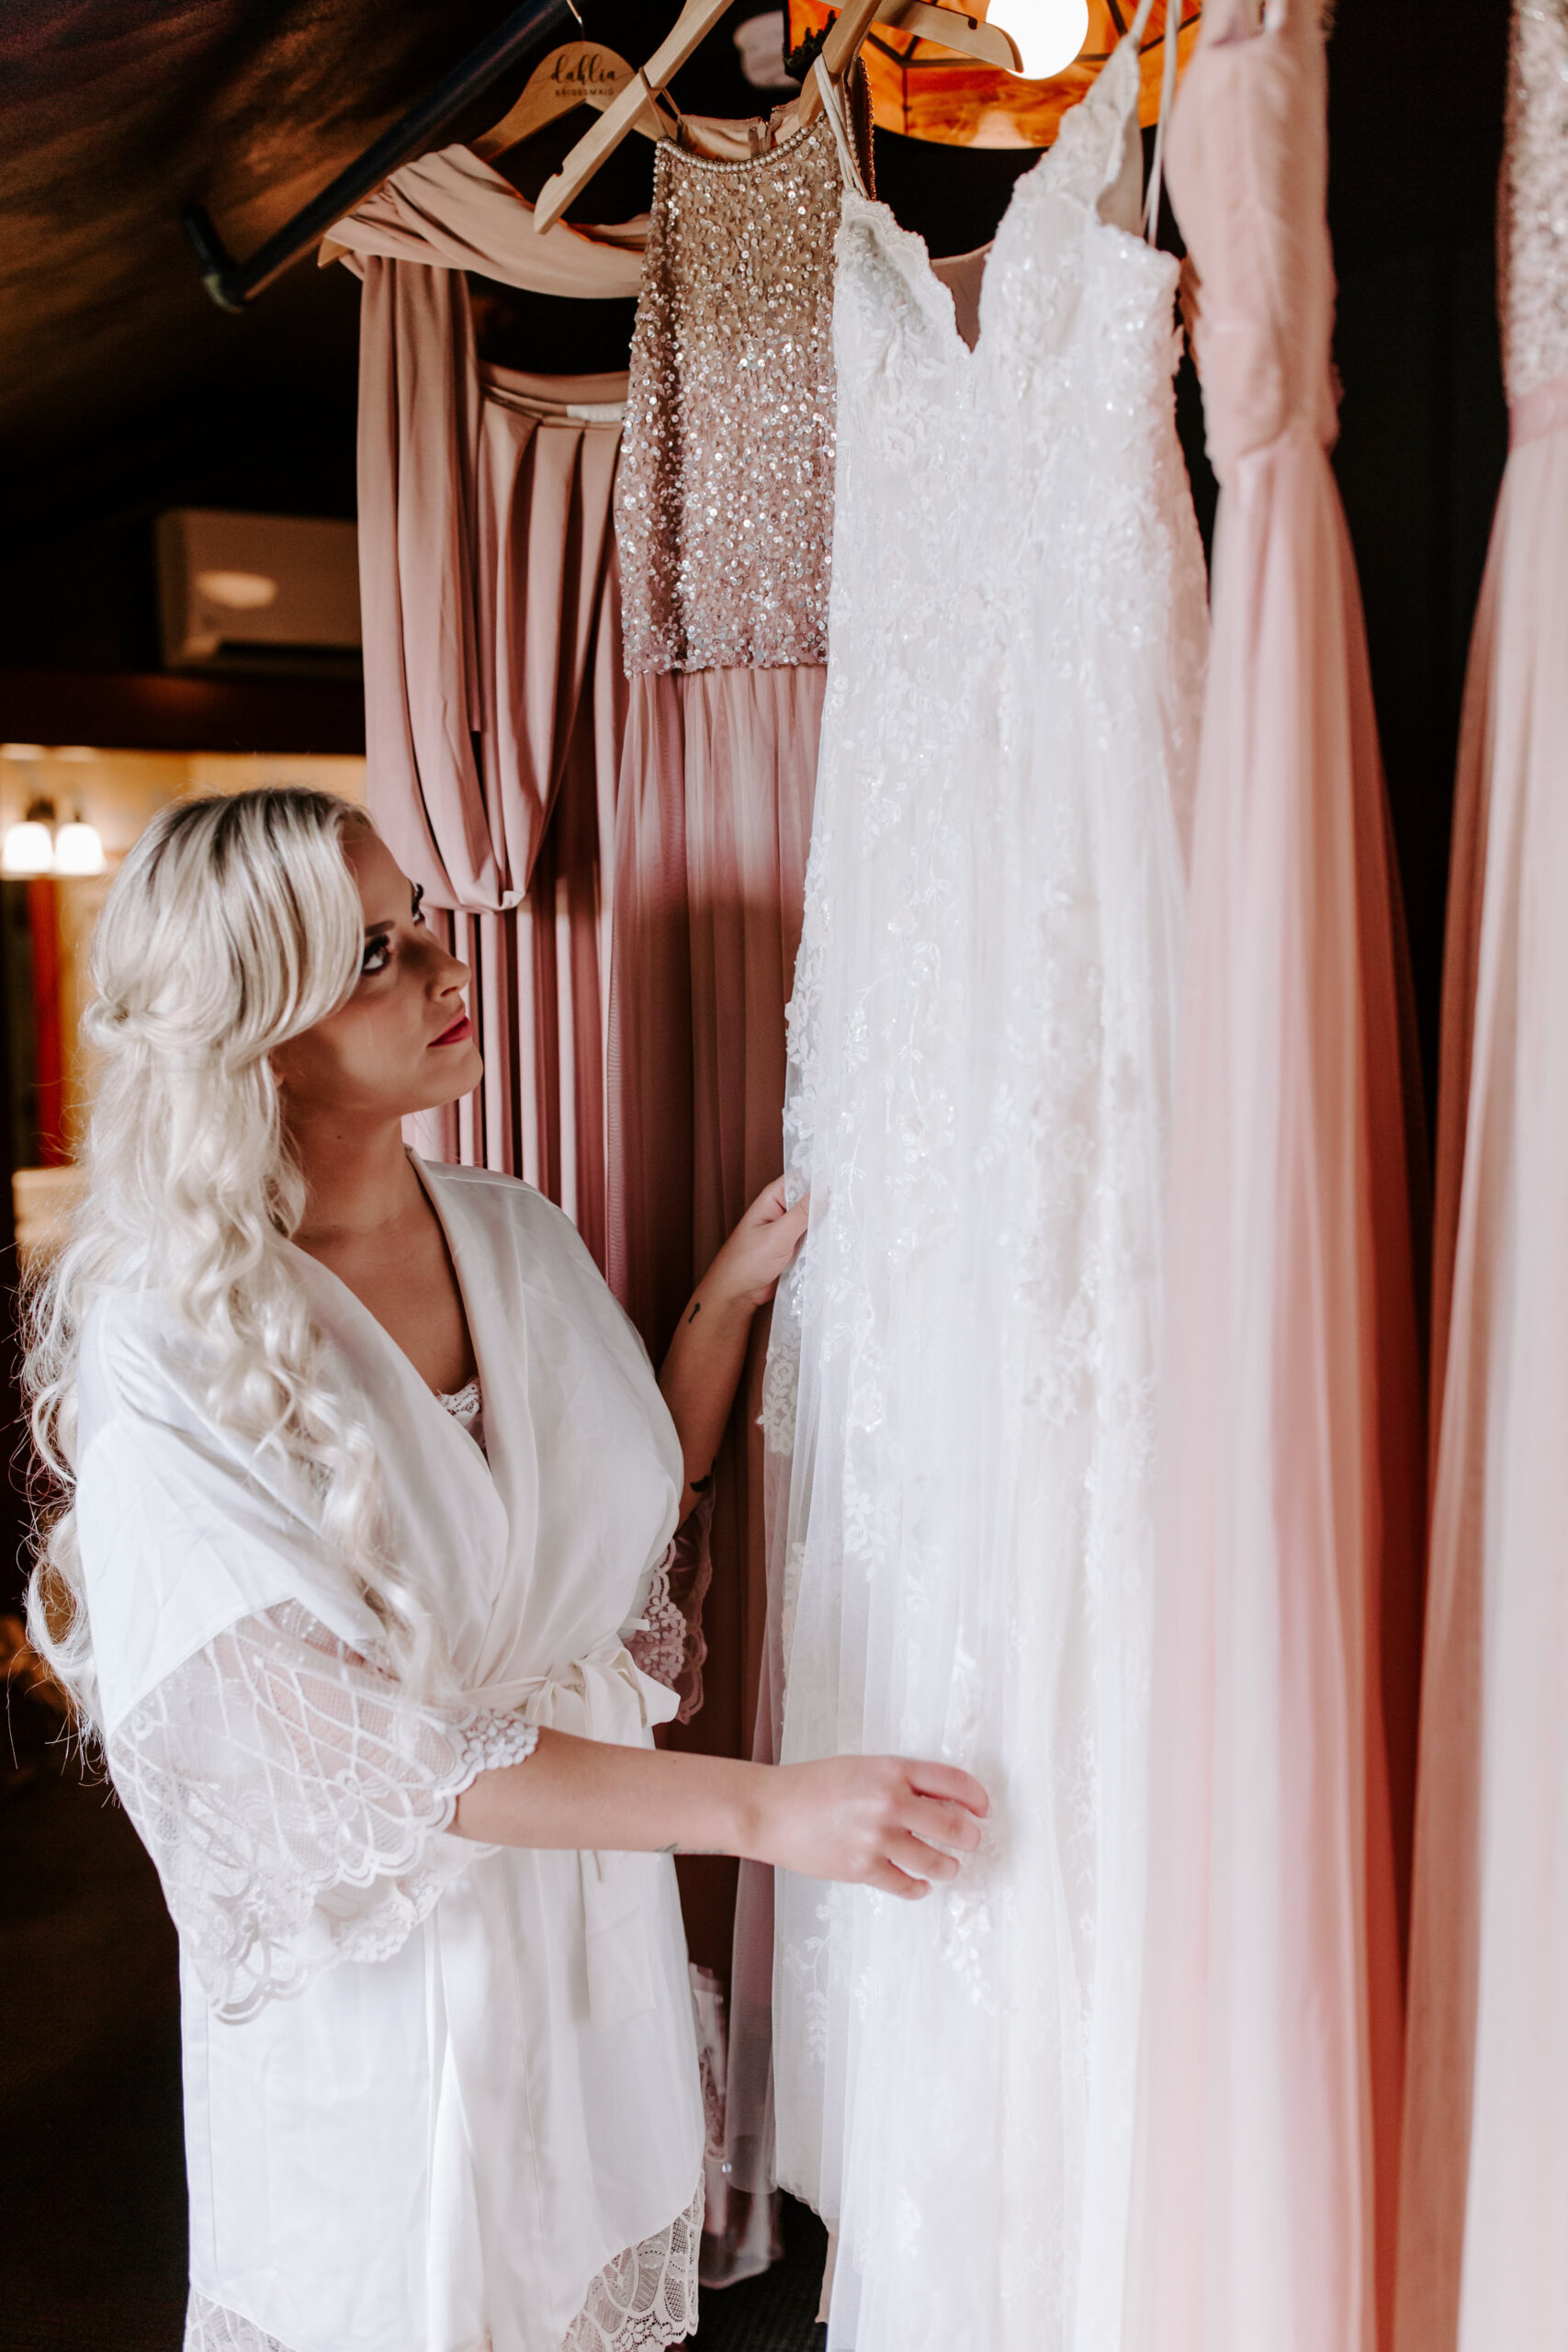 Rustic Bloom Photography | Bridesmaid Inspiration | Oregon Wedding Venue